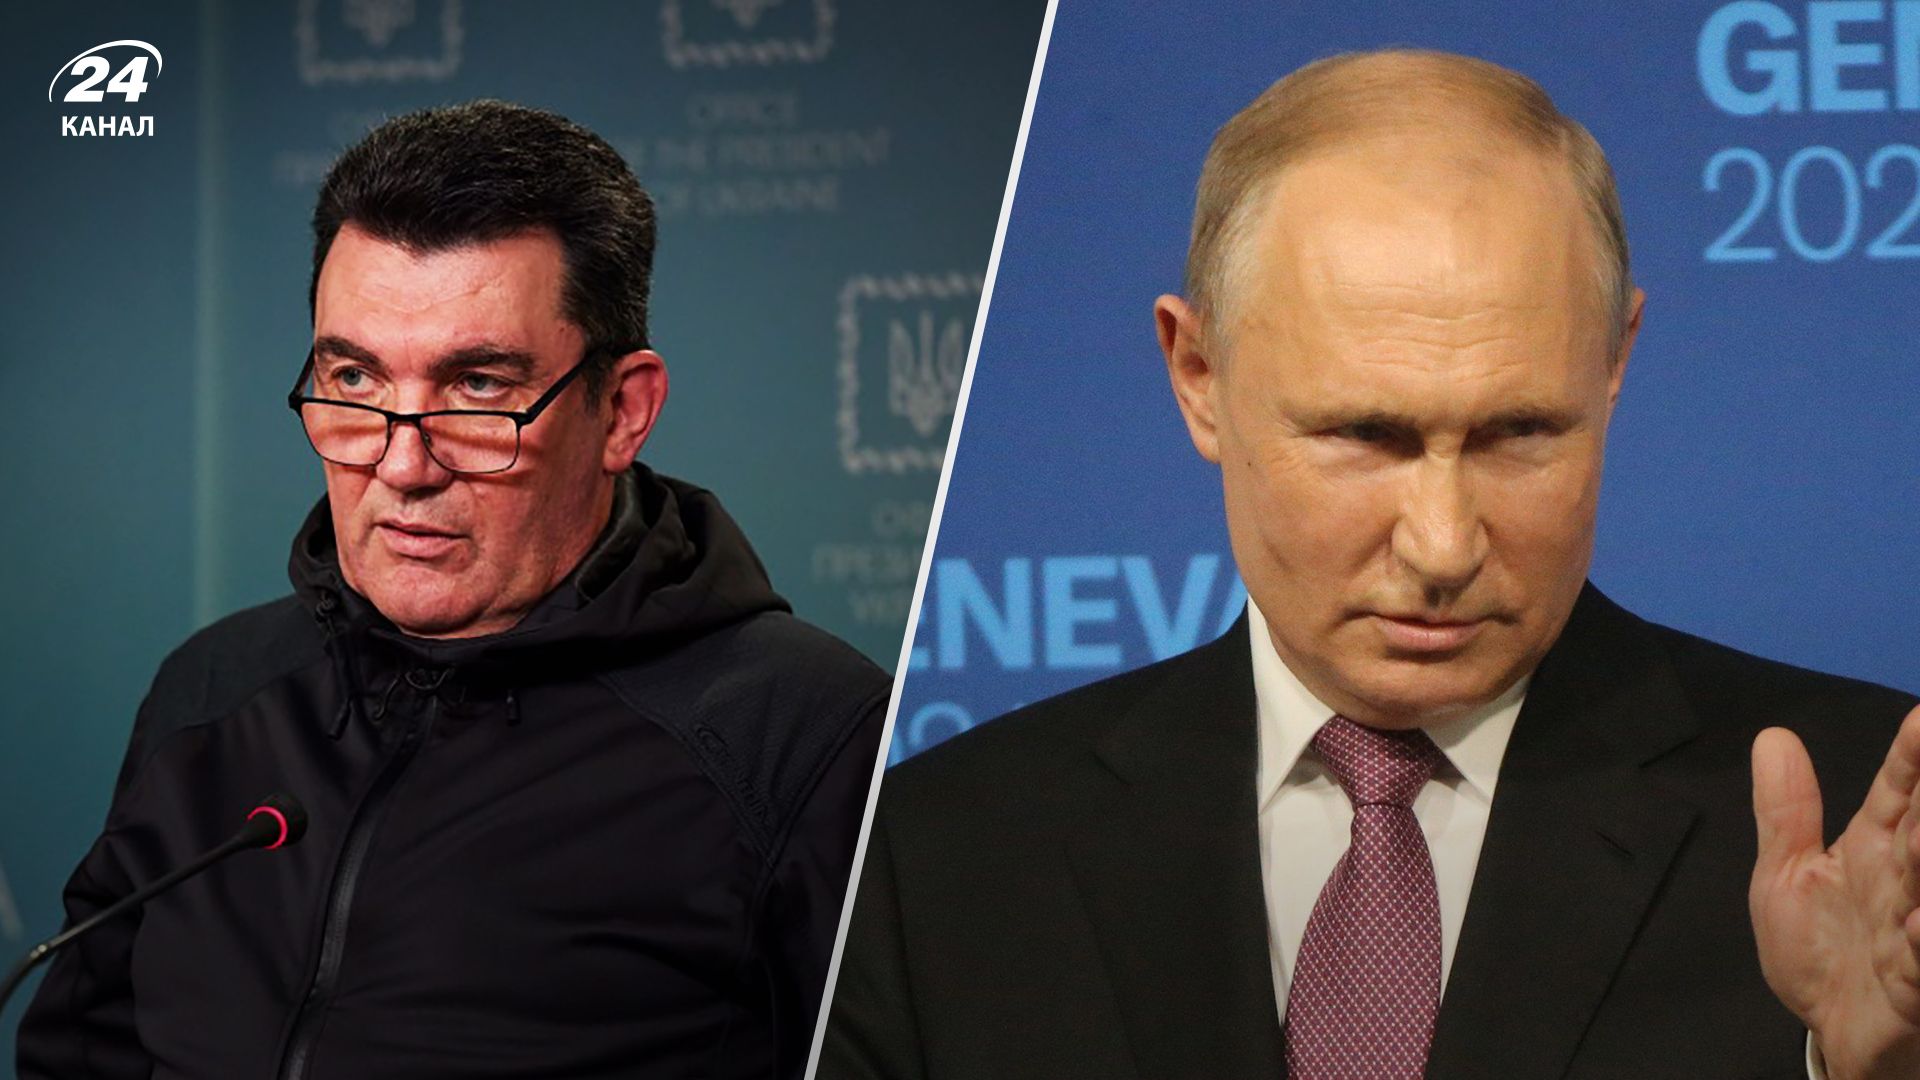 Данилов заявил, что Путин не будет использовать стратегическое ядерное оружие - 24 канал